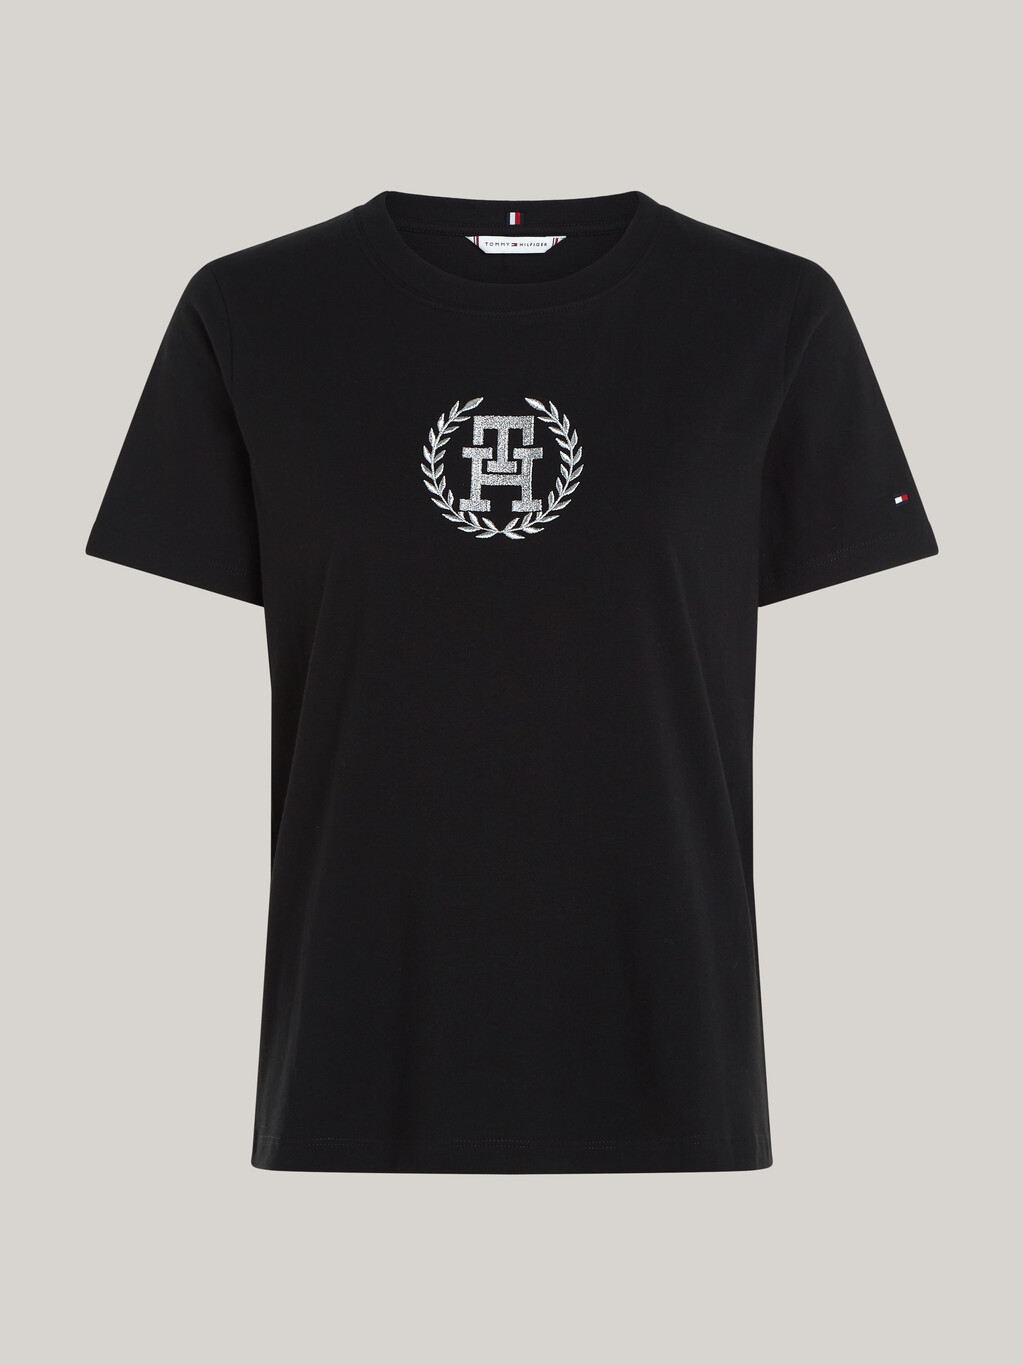 TH Monogram Crew Neck T-Shirt, Black, hi-res